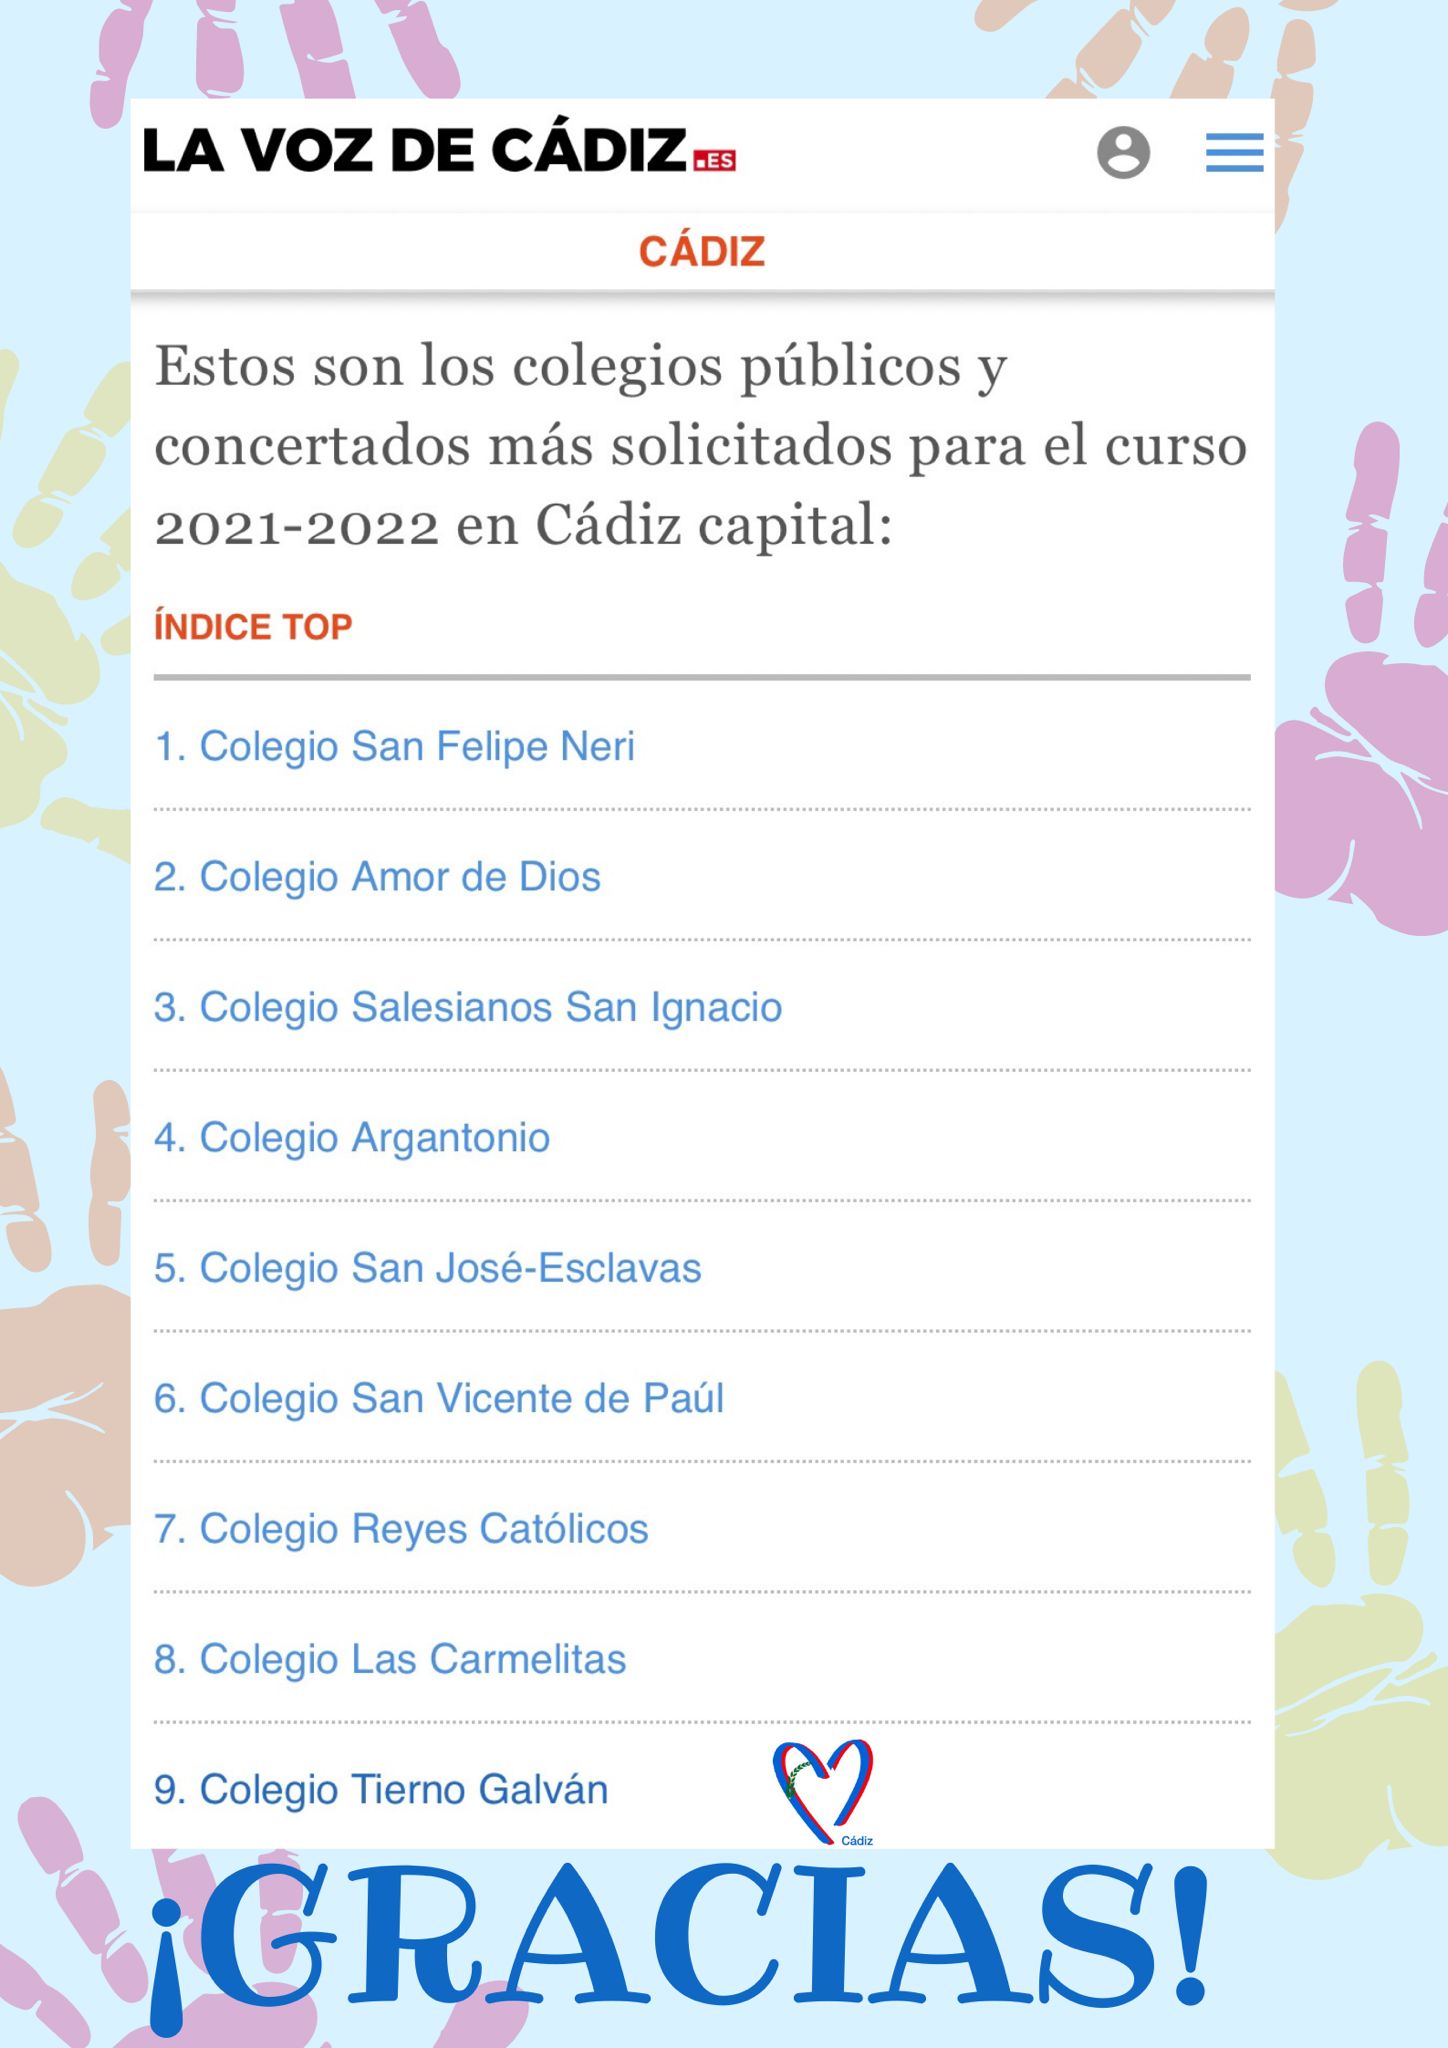 Listado de centros más solicitados según la noticia de La Voz de Cádiz